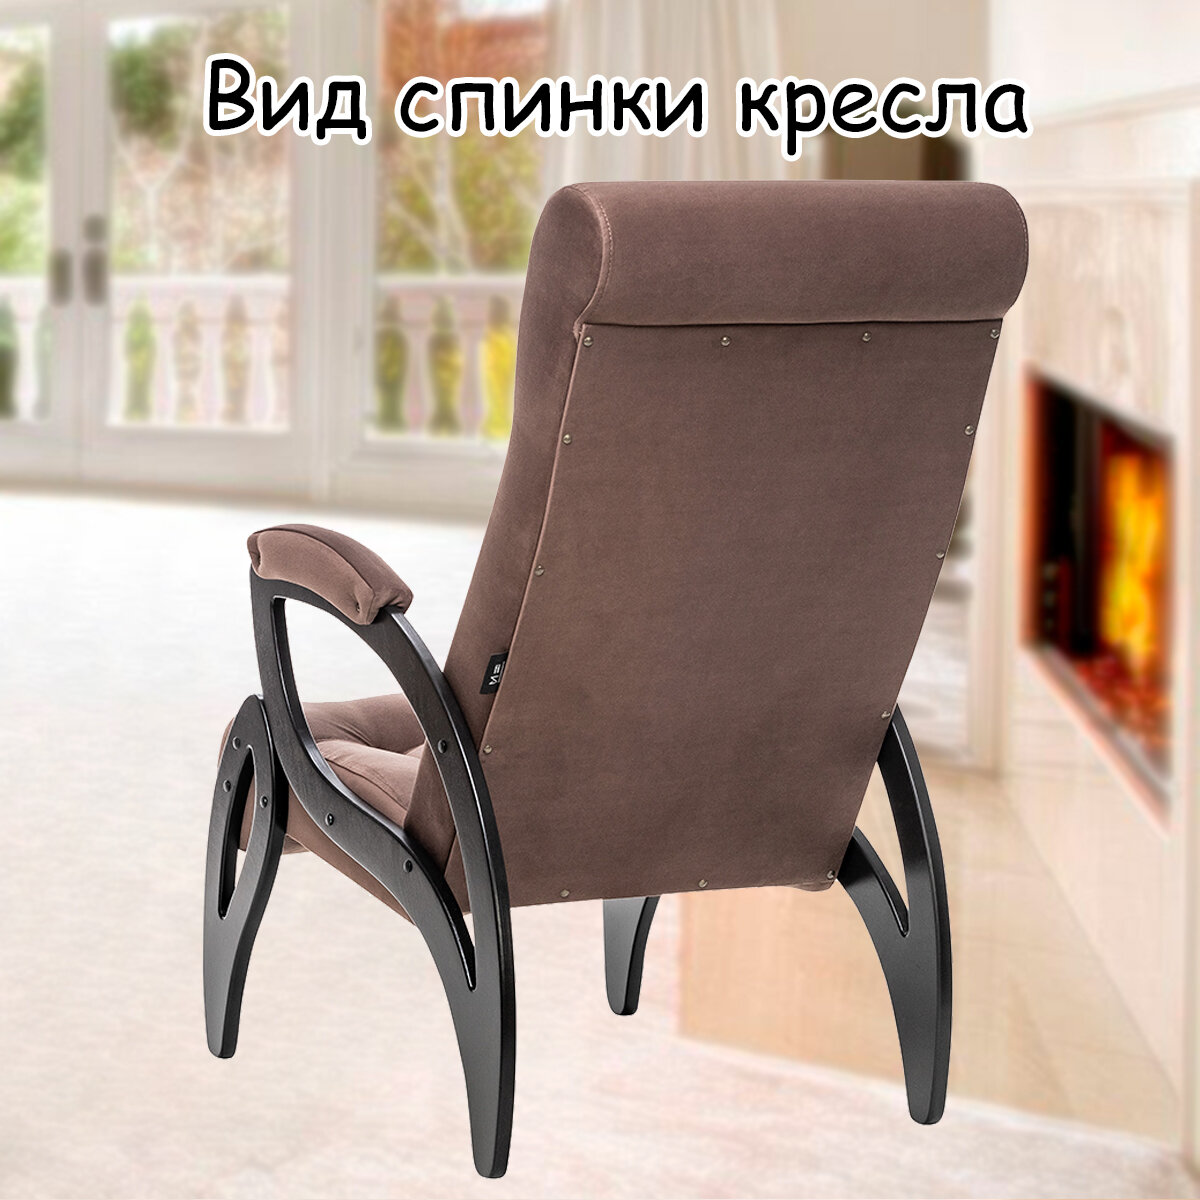 Кресло для взрослых 58.5х87х99 см, модель 51, maxx, цвет: Maxx 235 (коричневый), каркас: Venge (черный) - фотография № 8